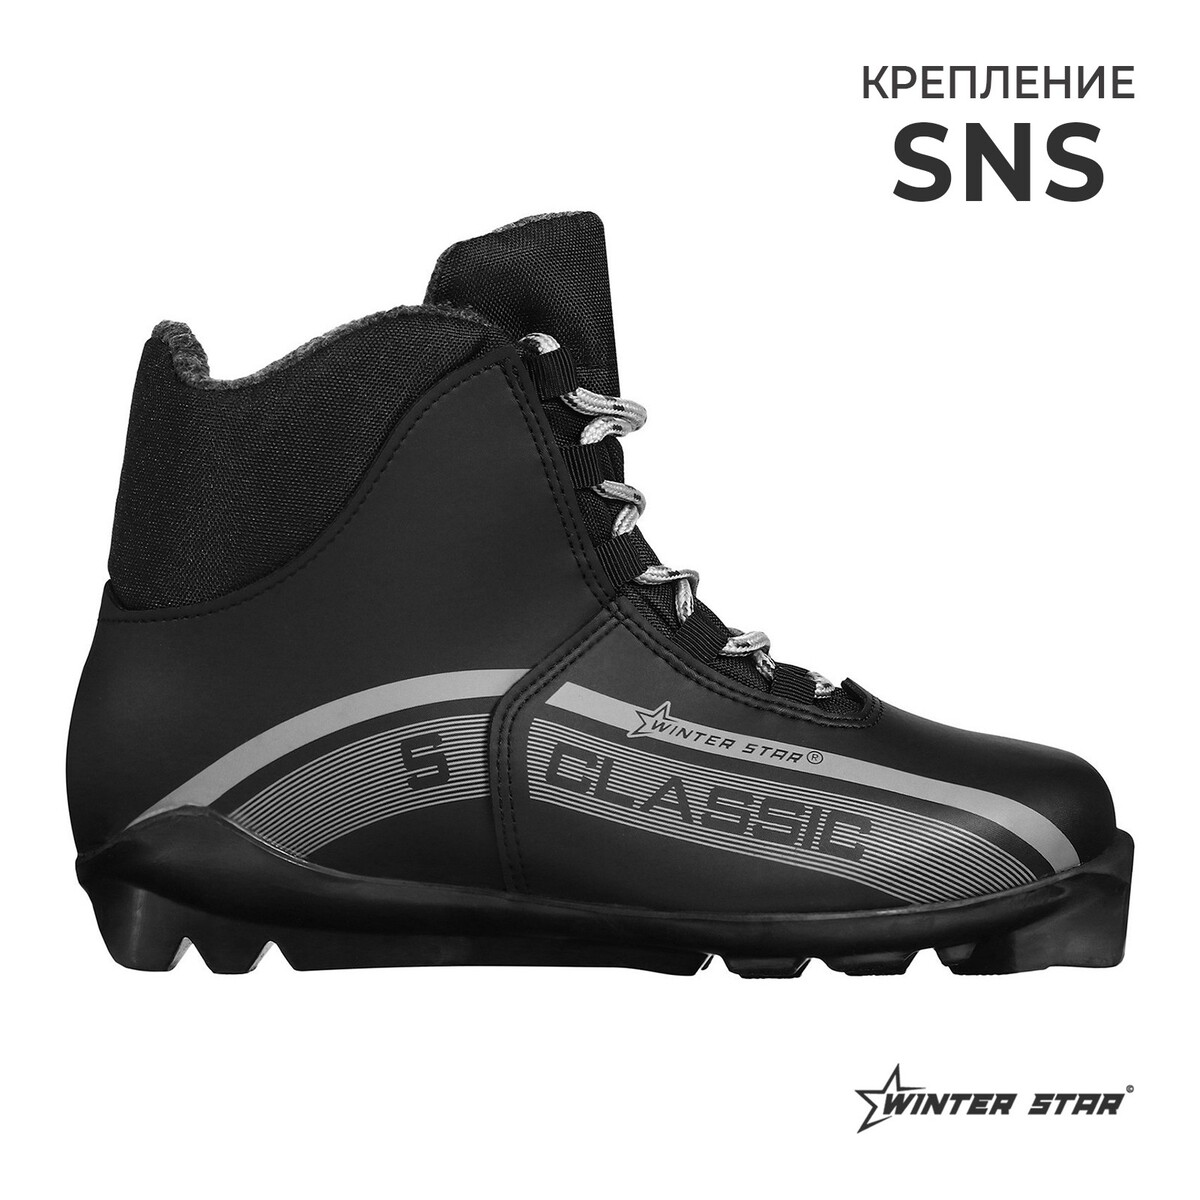 Ботинки лыжные winter star classic, sns, р. 46, цвет черный, лого серый ботинки сноубордические luckyboo 19 20 future star